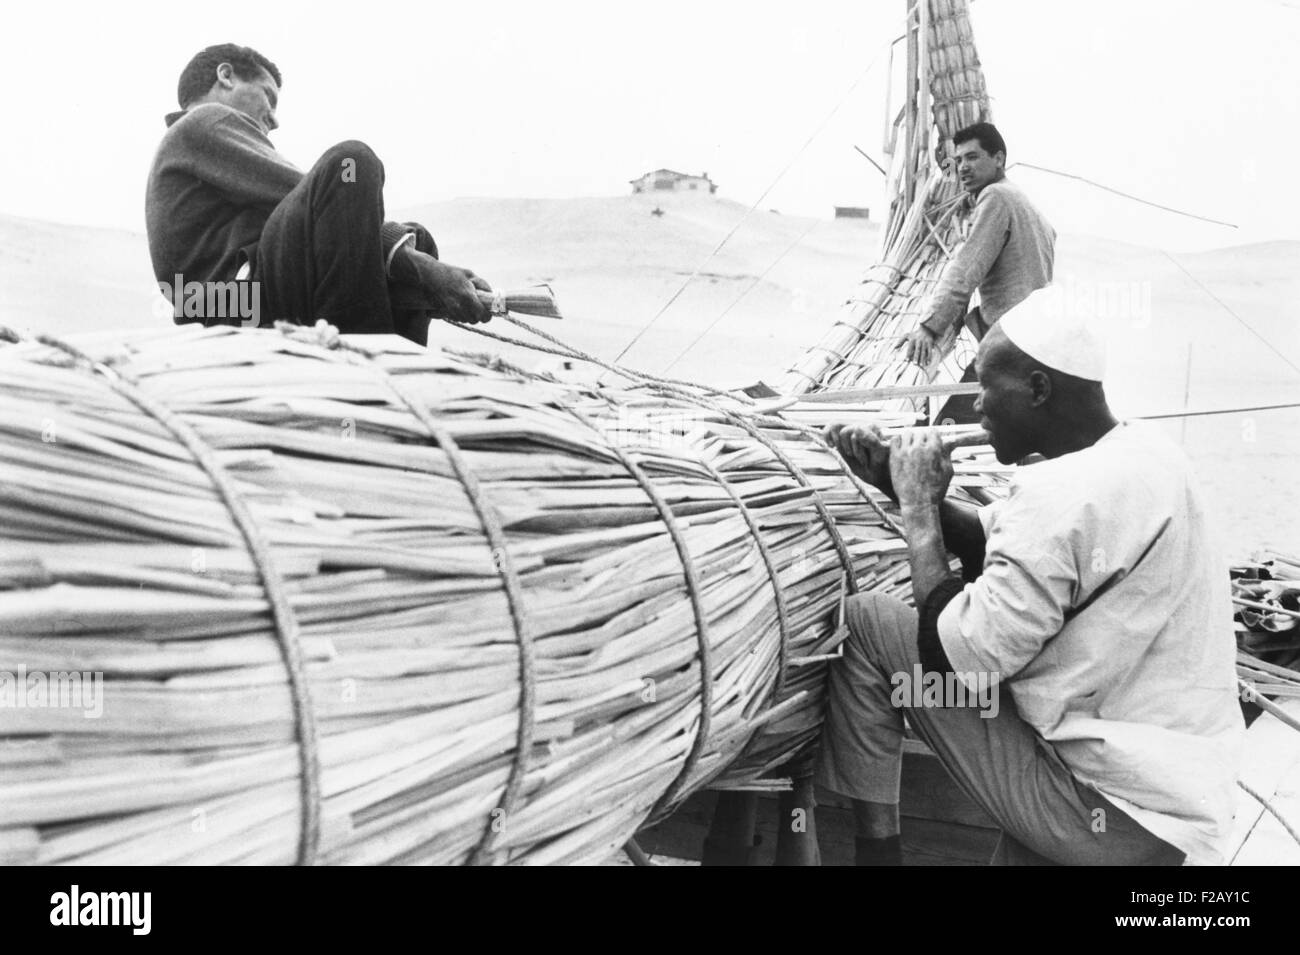 Bootsbauer vom Tschadsee benutzt Papyrus Reed vom See Tana in Äthiopien, um 'RA' zu konstruieren. Mai 1966. Sie arbeiteten auf Thor Heyerdahls Expedition Handwerk in der ägyptischen Wüste in der Nähe der Pyramiden von Gizeh. (CSU 2015 9 938) Stockfoto